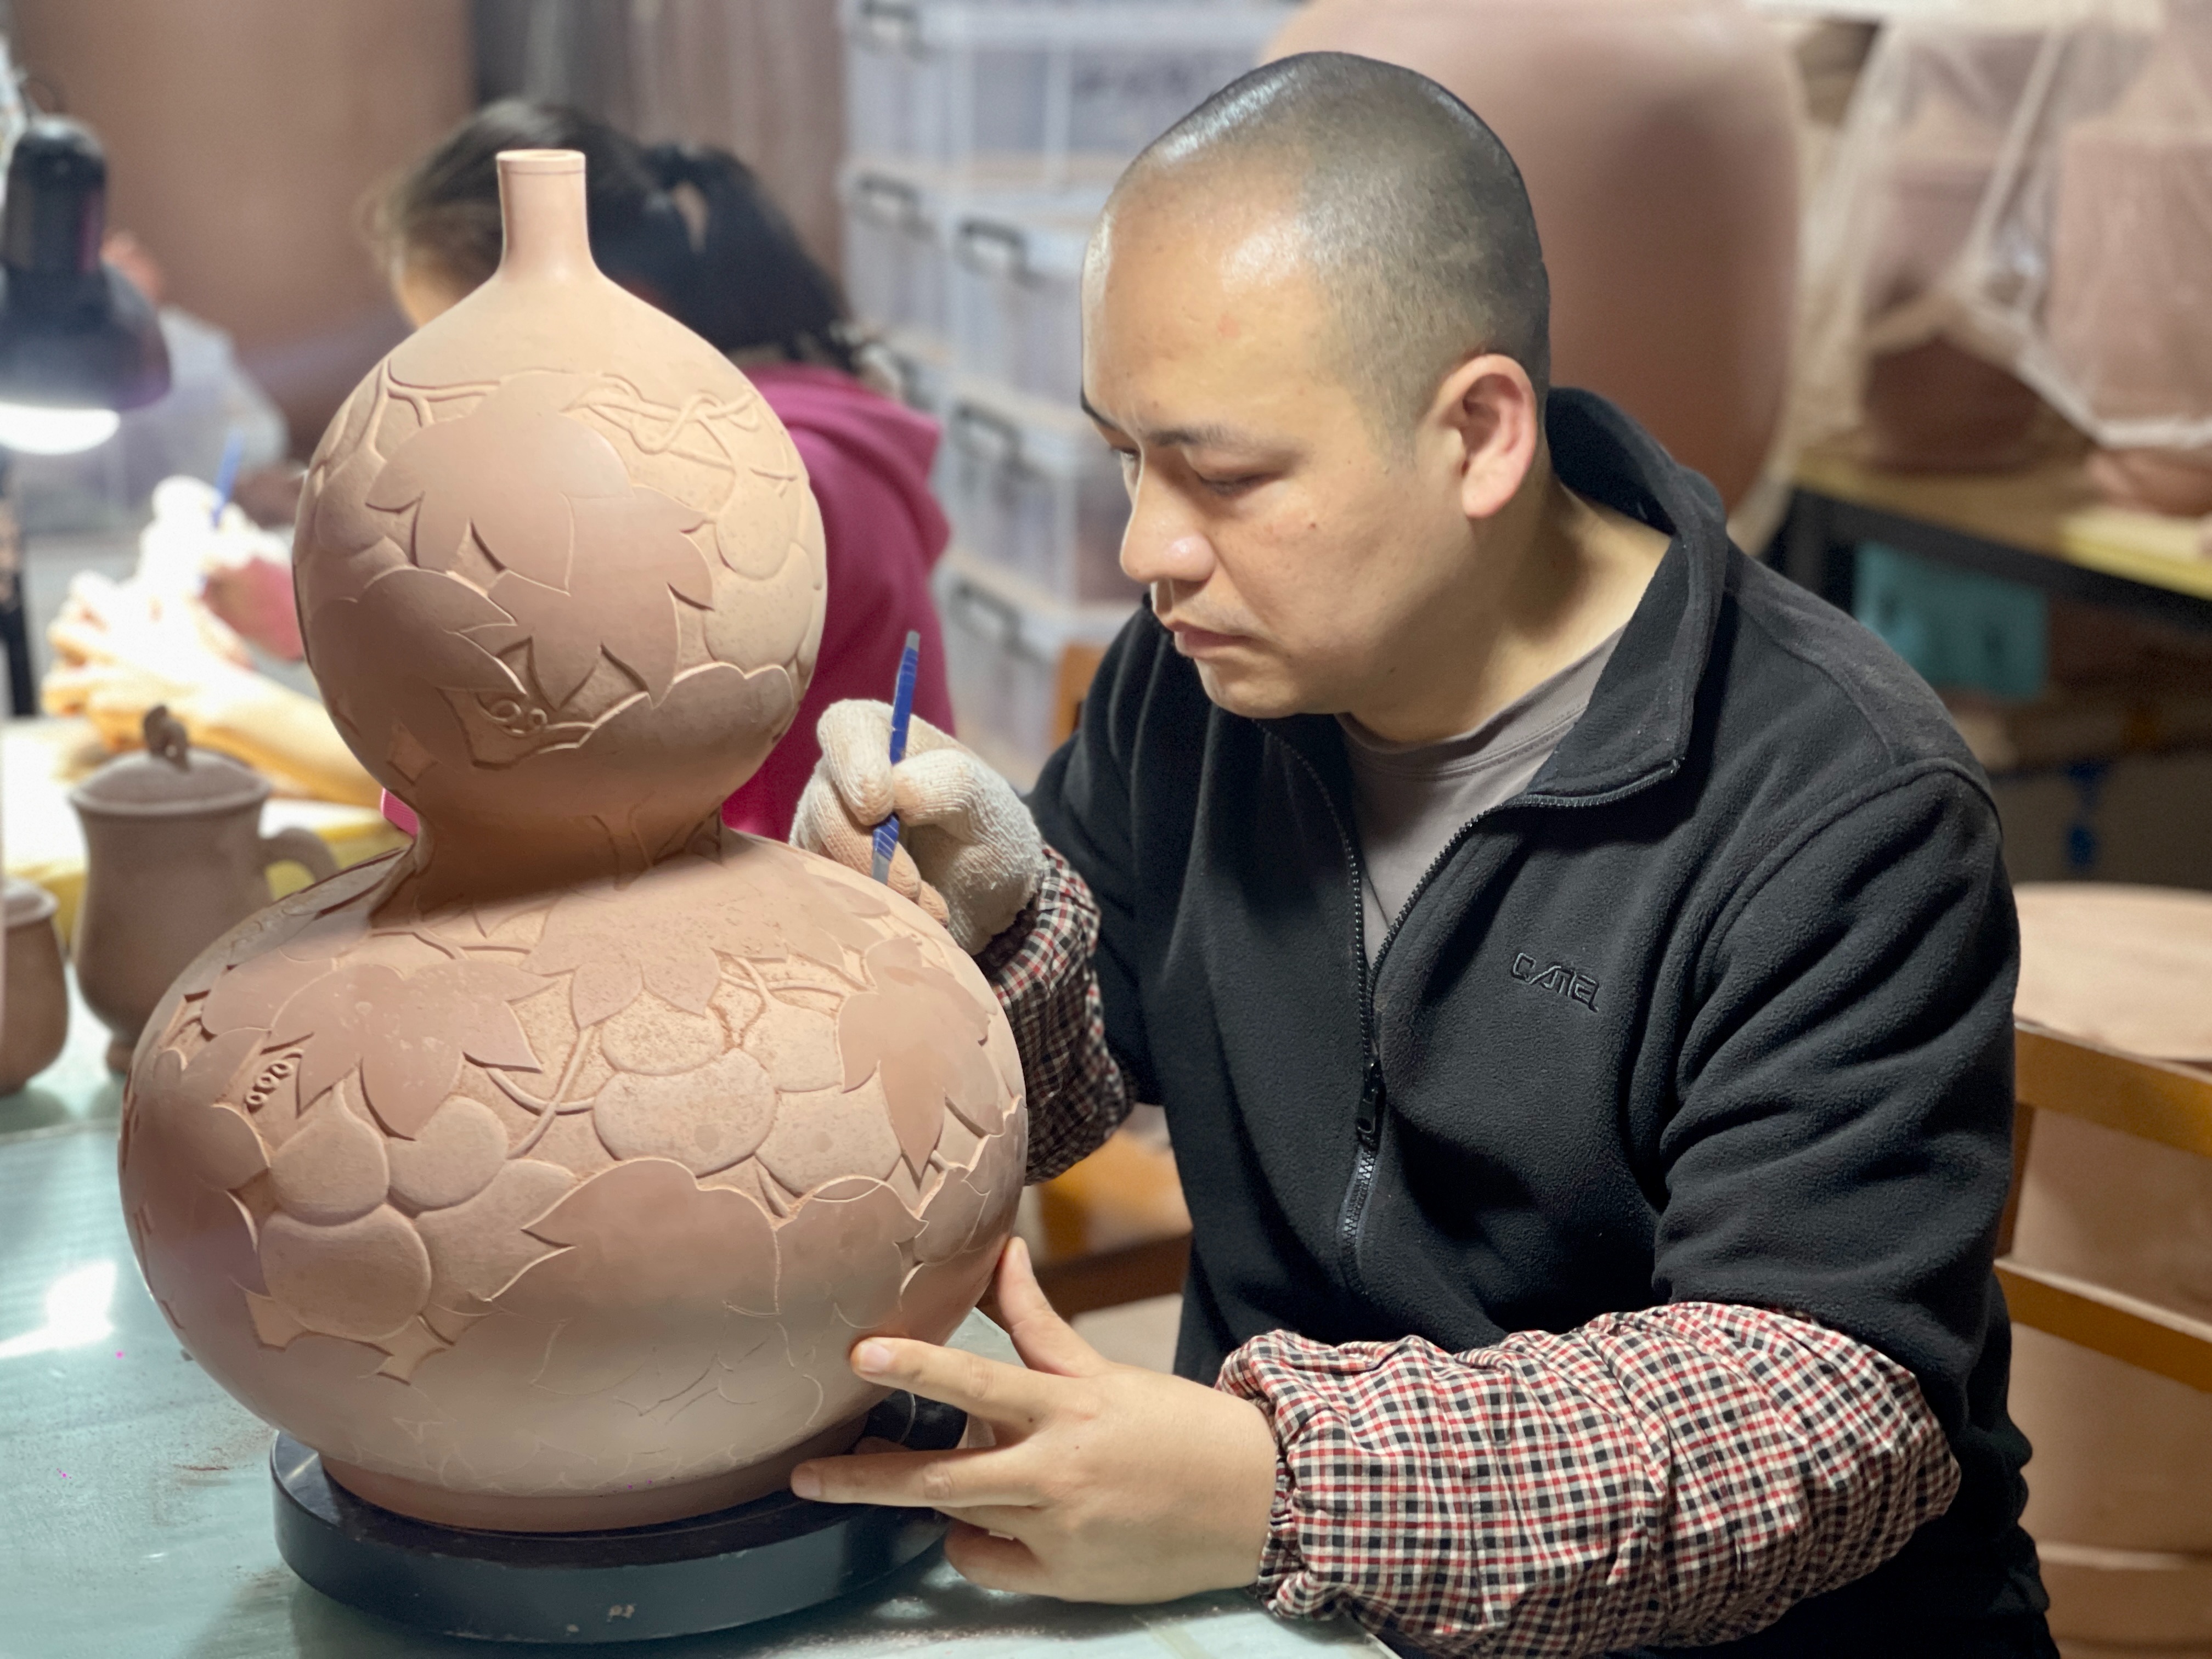 广西钦州:发展坭兴陶产业 为残疾人提供更多就业机会